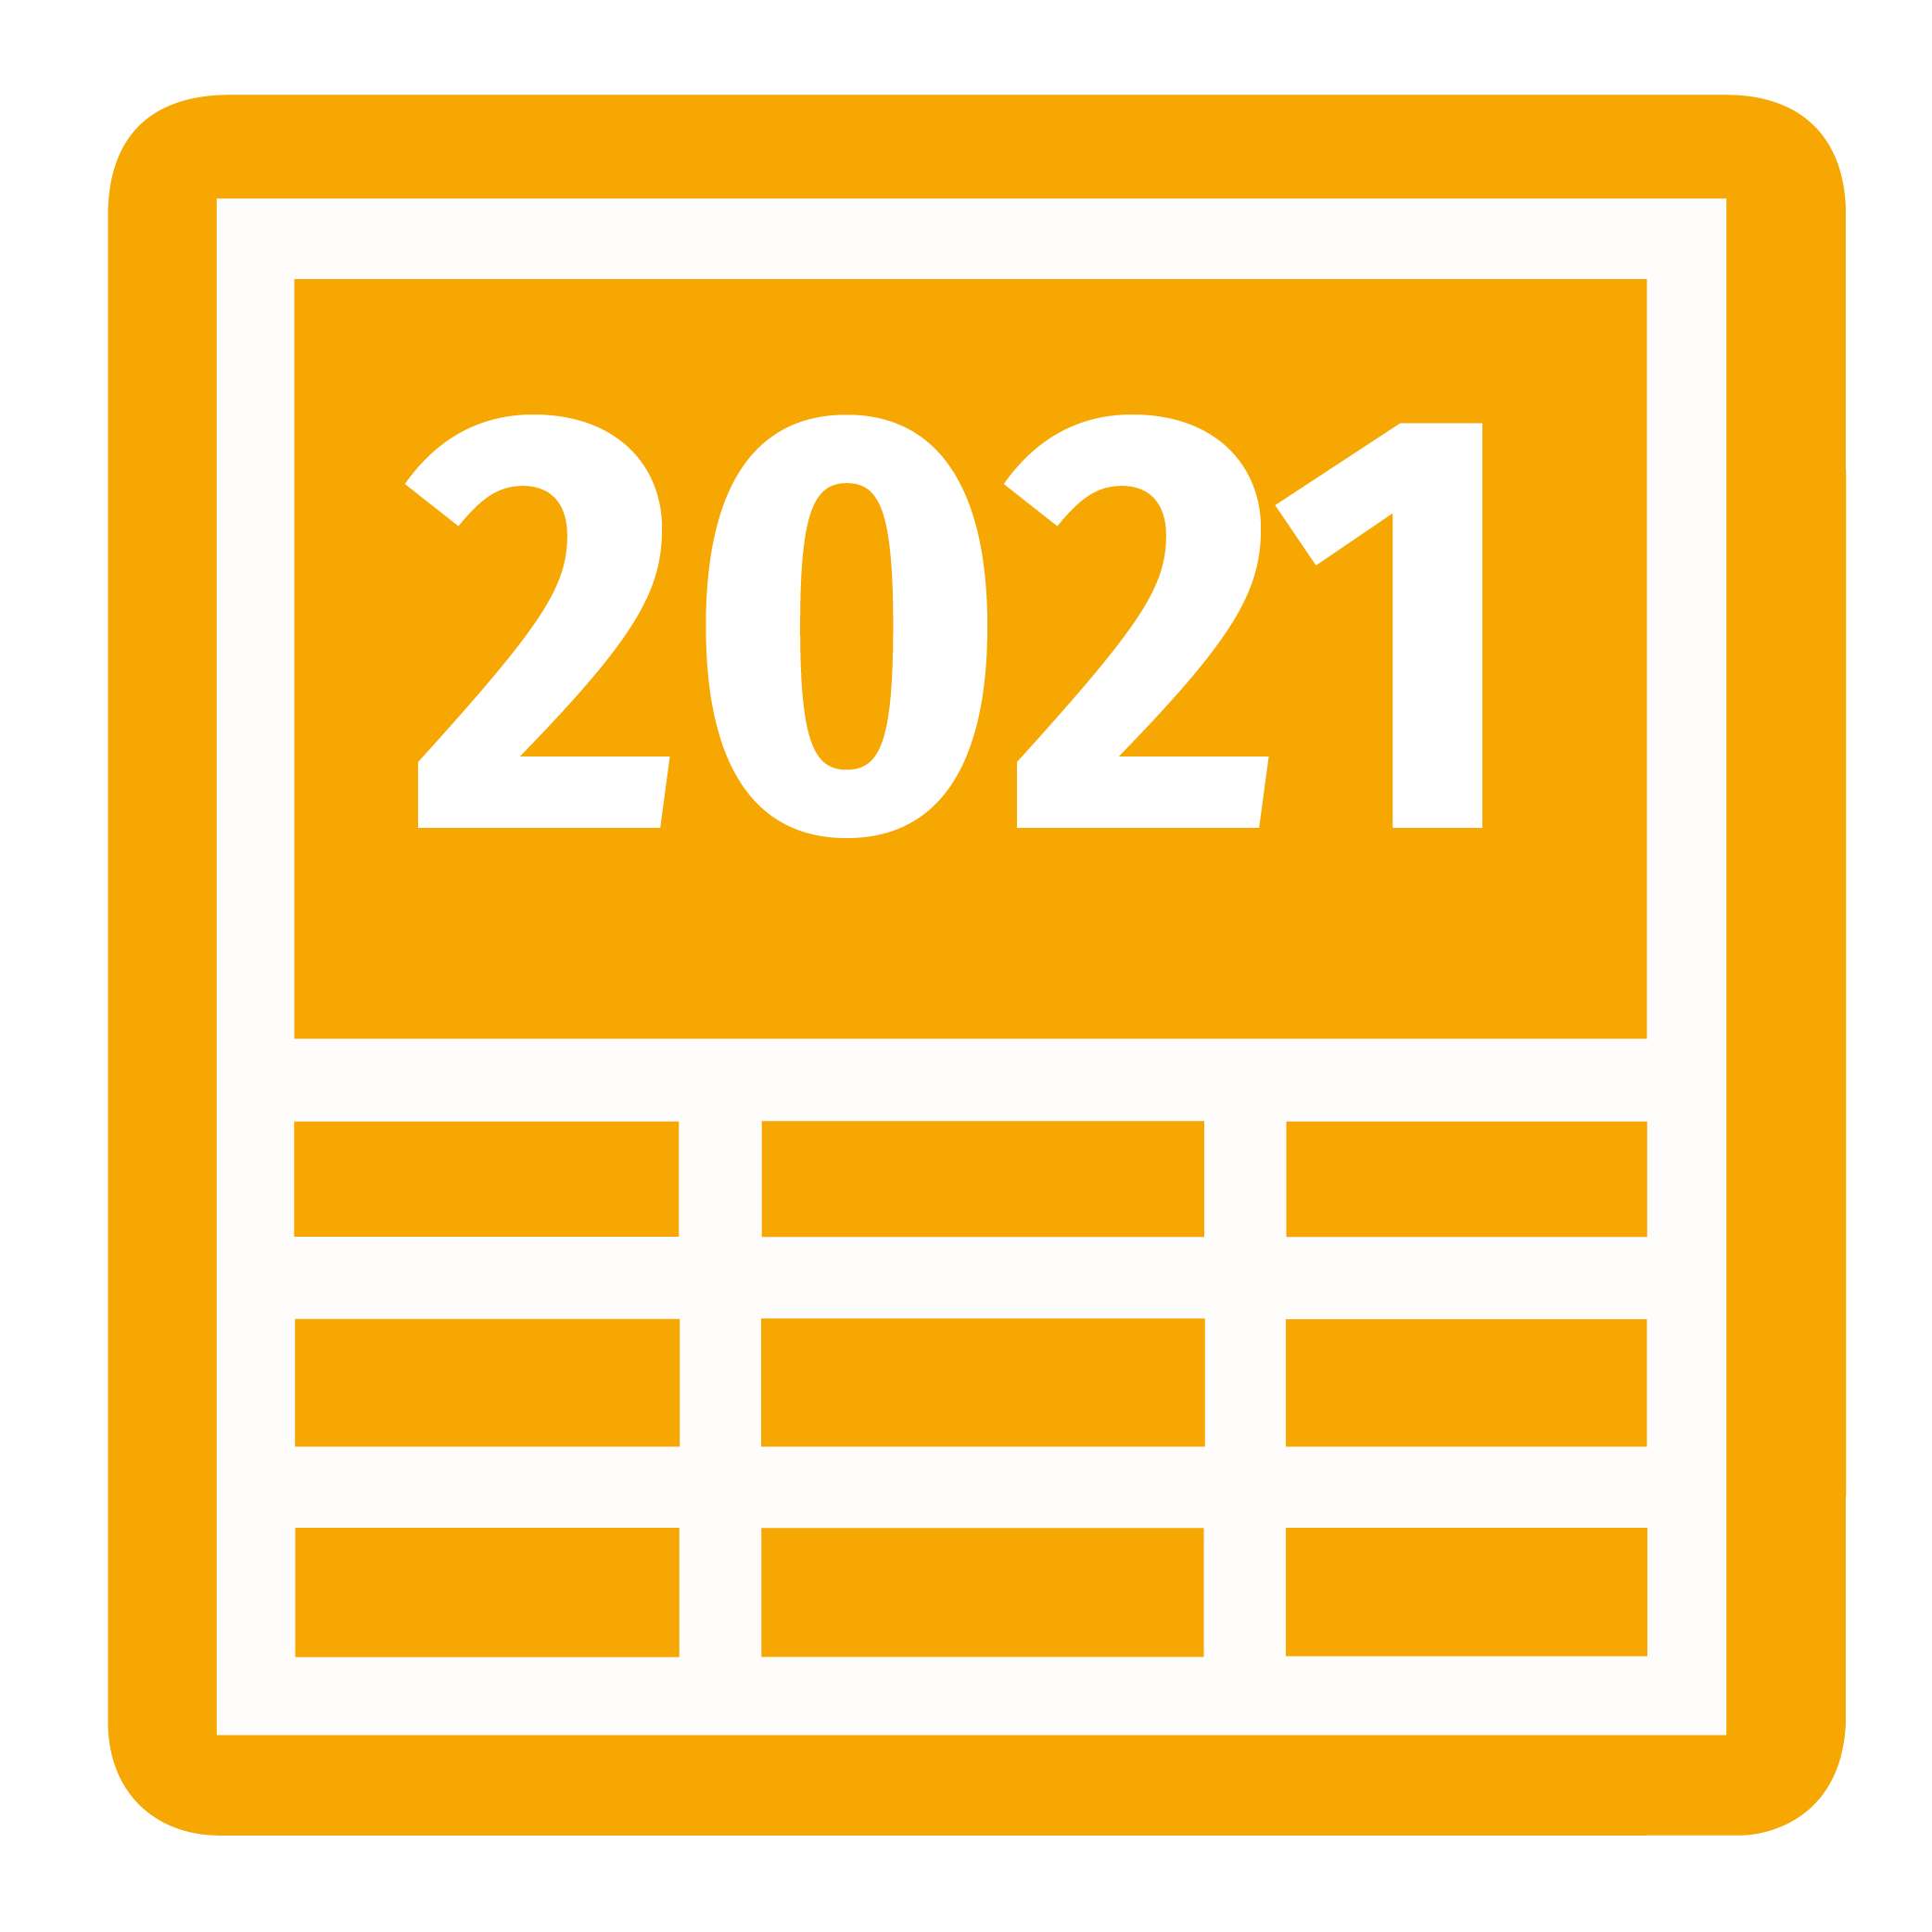 LTU liikevaihto ja henkilöstö vuosi 2021